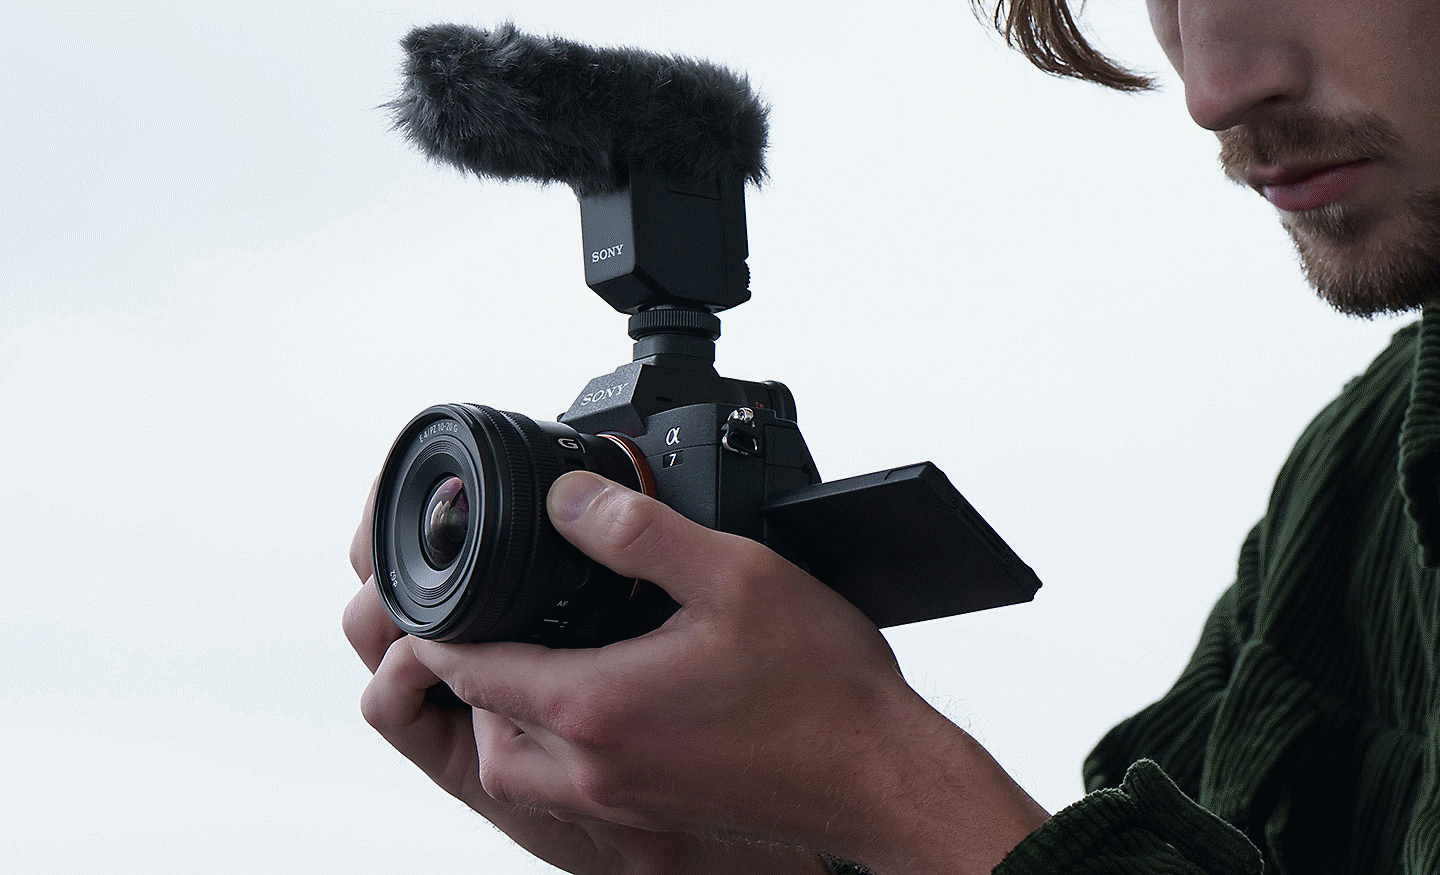 Slika čoveka koji snima video klip dok upravlja ručicom za zumiranje objektiva E PZ 10-20mm F4 G